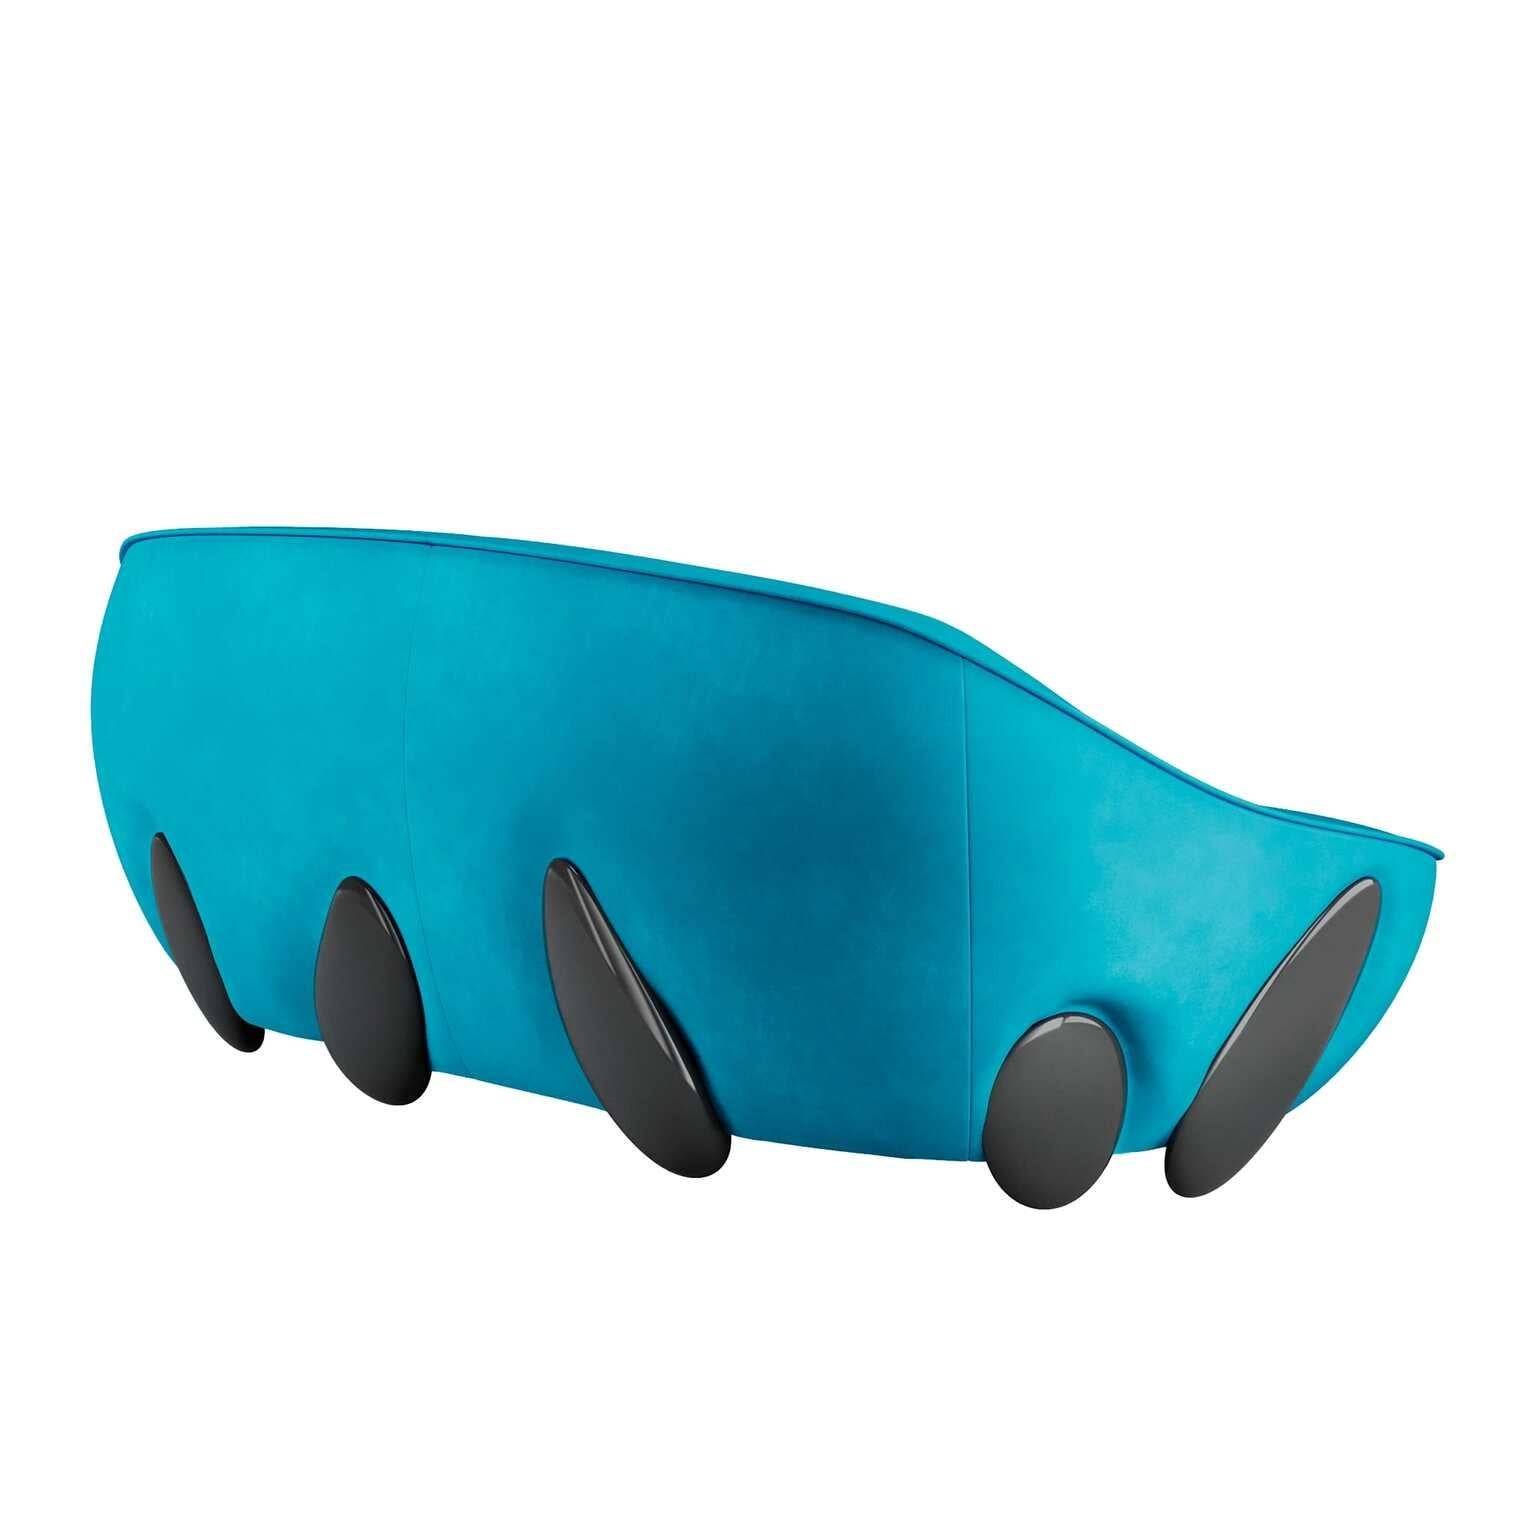 Canapé rond contemporain en velours bleu avec pieds laqués noirs.
Lunarys Sofa Blue est un canapé de style moderne à l'esthétique glamour. Ses volumes dodus et son design accueillant transforment ce canapé moderne en une assise douillette parfaite.